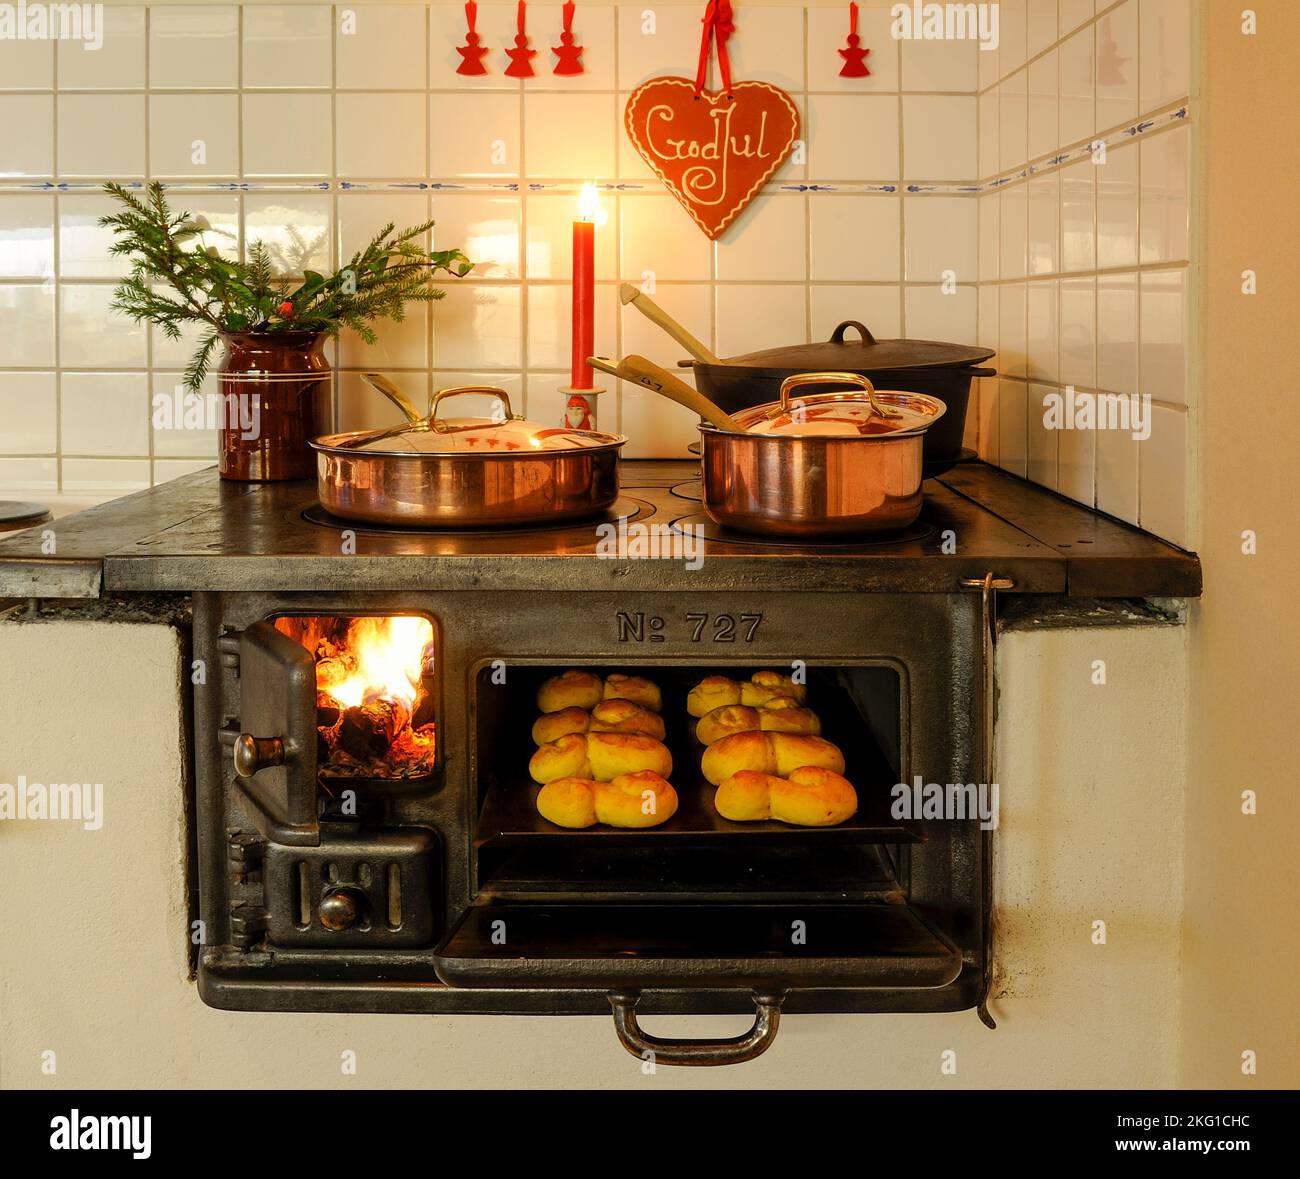 Cuisinière suédoise avec des petits pains au safran dans le four à l'heure de noël Banque D'Images